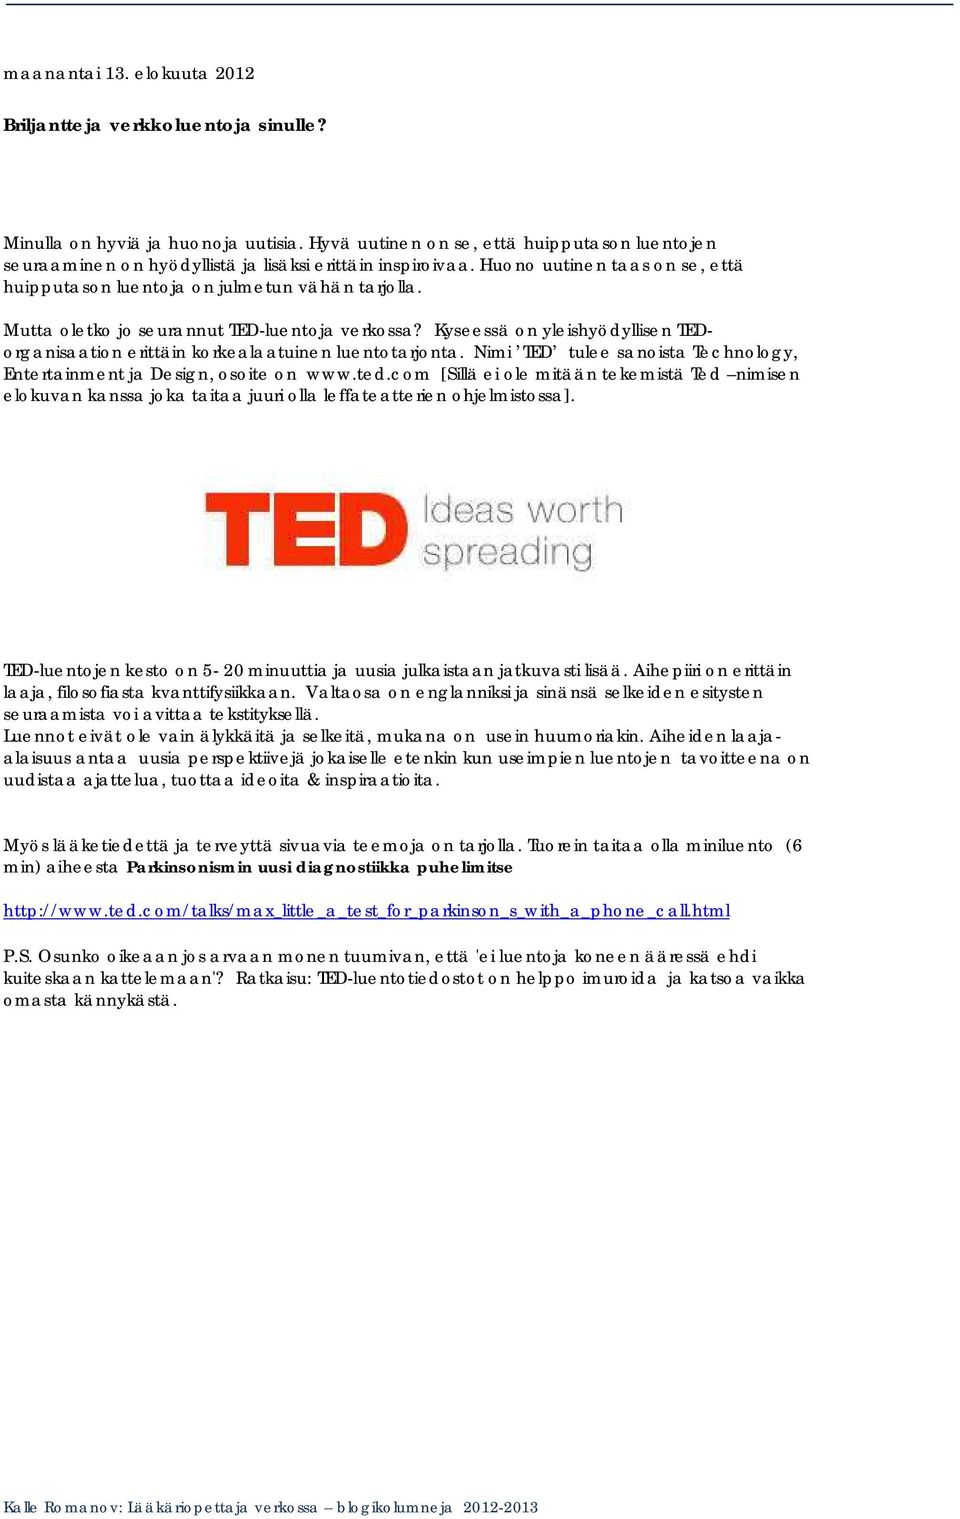 Mutta oletko jo seurannut TED-luentoja verkossa? Kyseessä on yleishyödyllisen TEDorganisaation erittäin korkealaatuinen luentotarjonta.